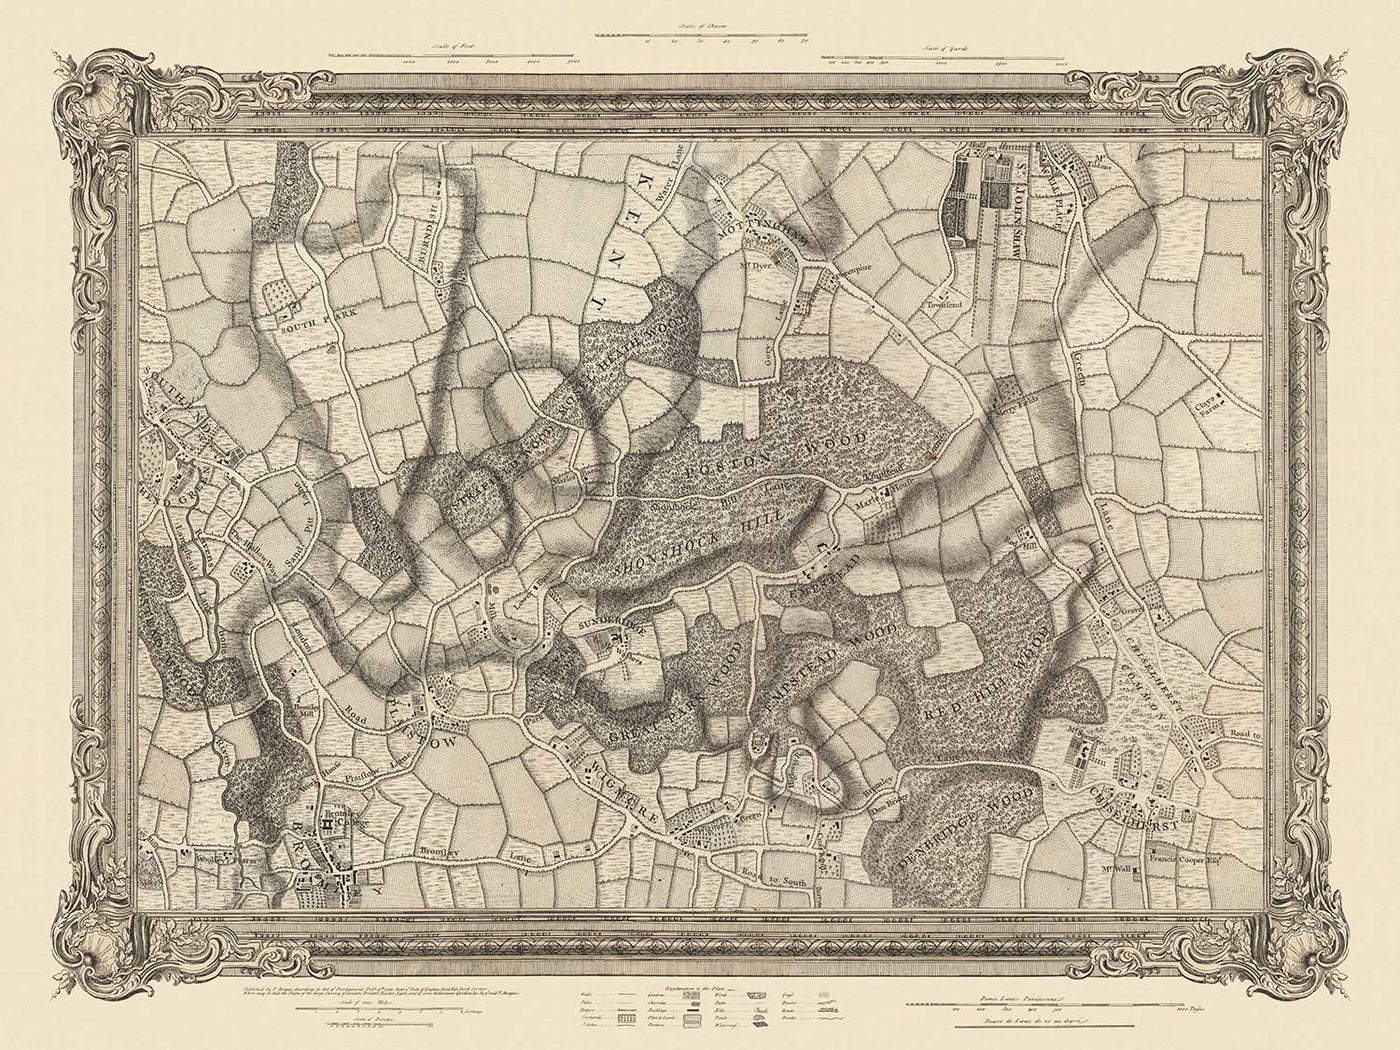 Antiguo mapa del sureste de Londres en 1746 por John Rocque - Chislehurst, Bromley, Mottingham, Southend, Widmore, SE6, SE12, SE9, SE13